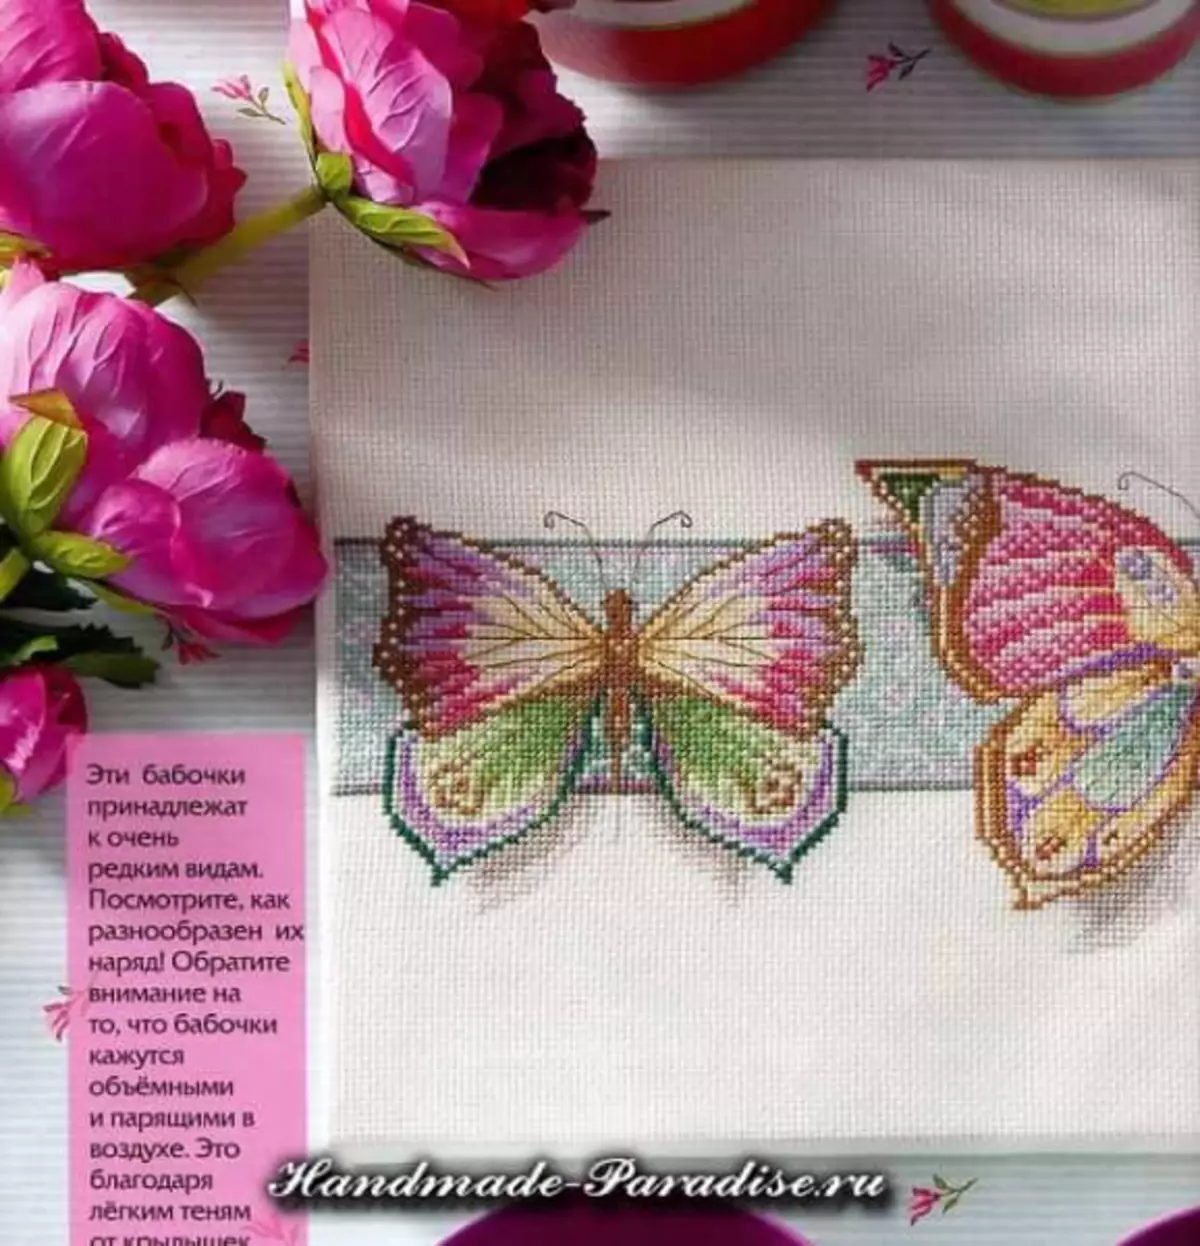 Schmetterlinge - Querstickereischemata